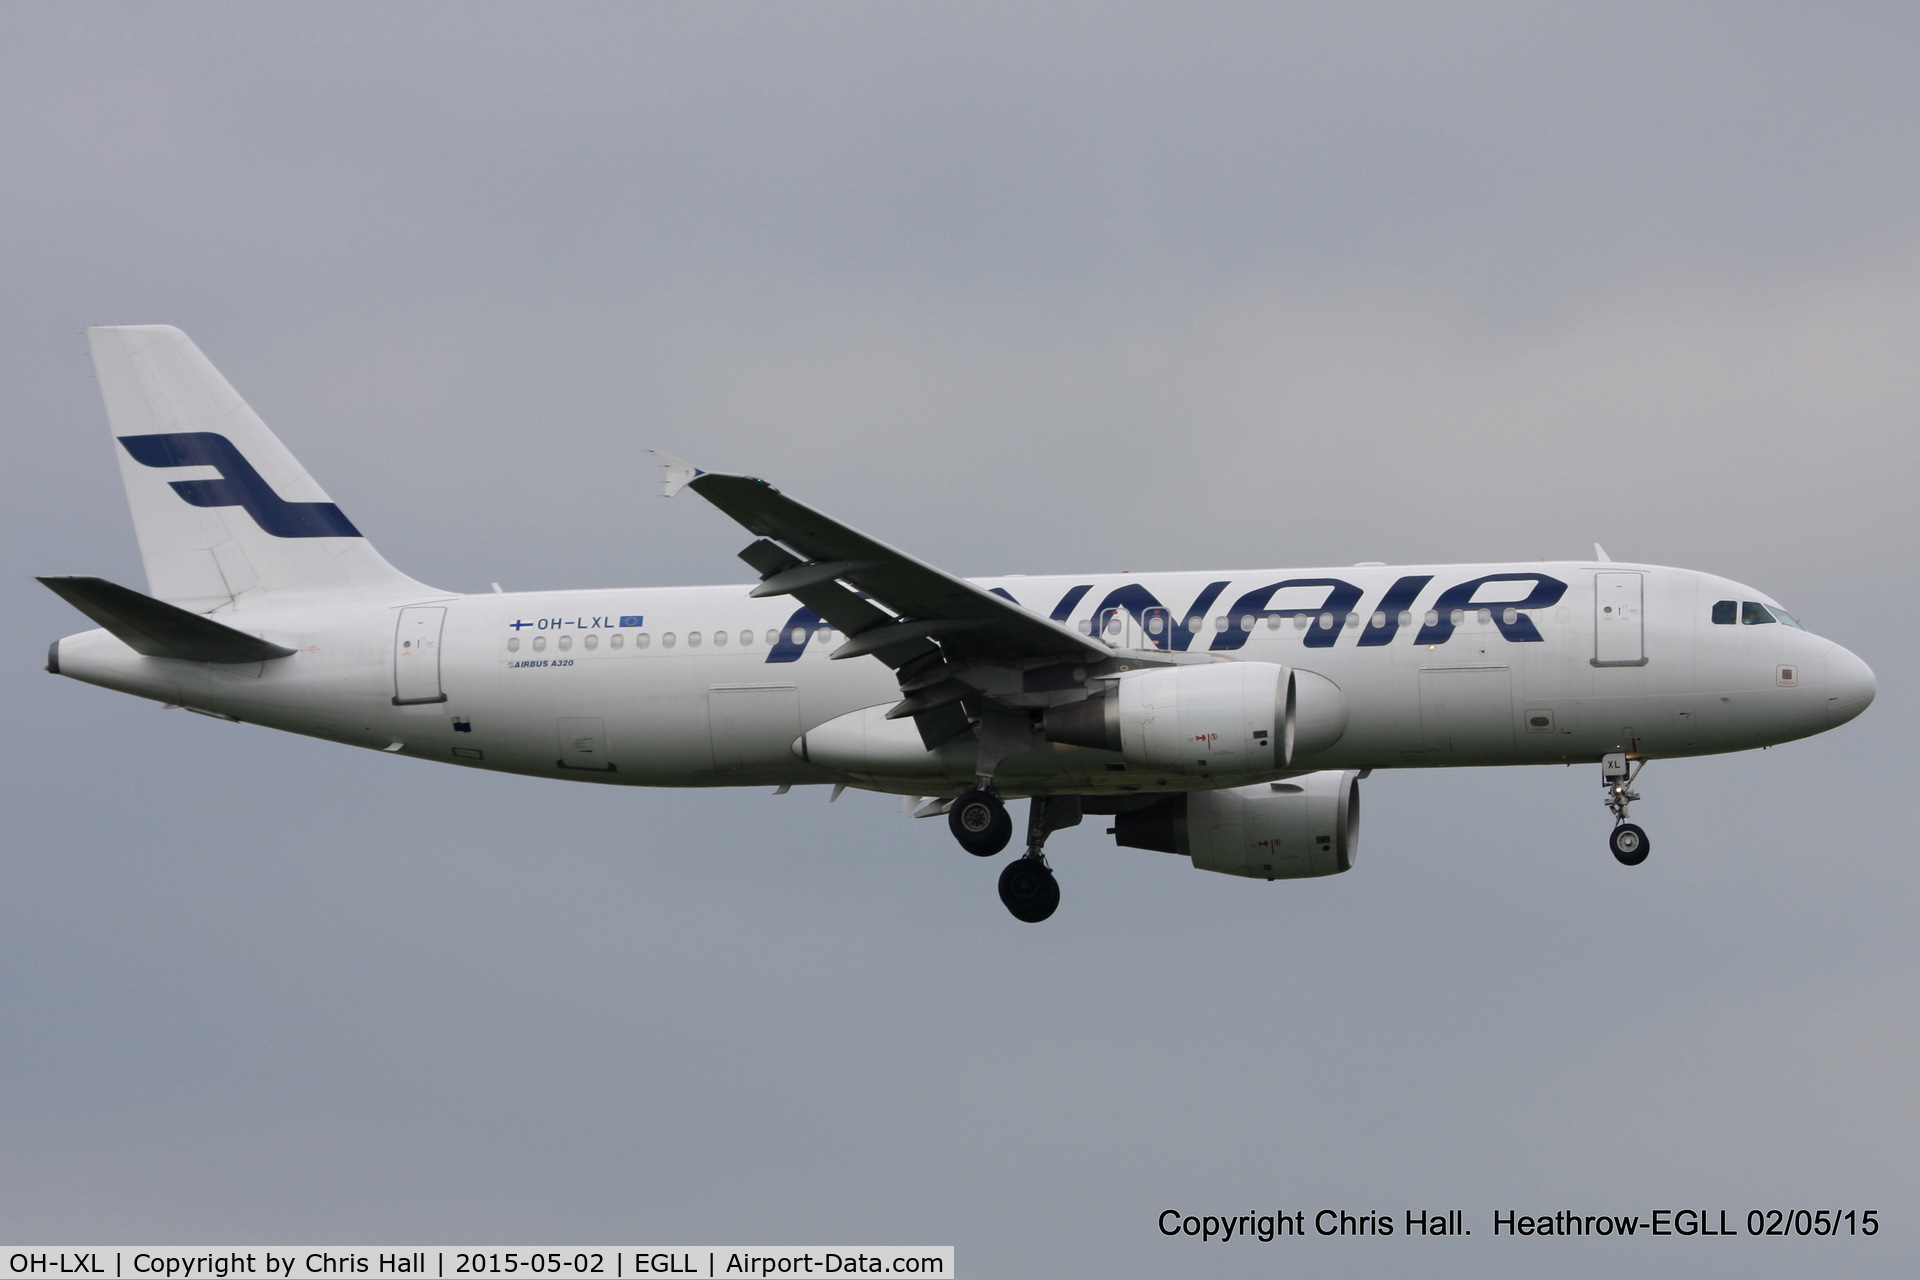 OH-LXL, 2003 Airbus A320-214 C/N 2146, Finnair